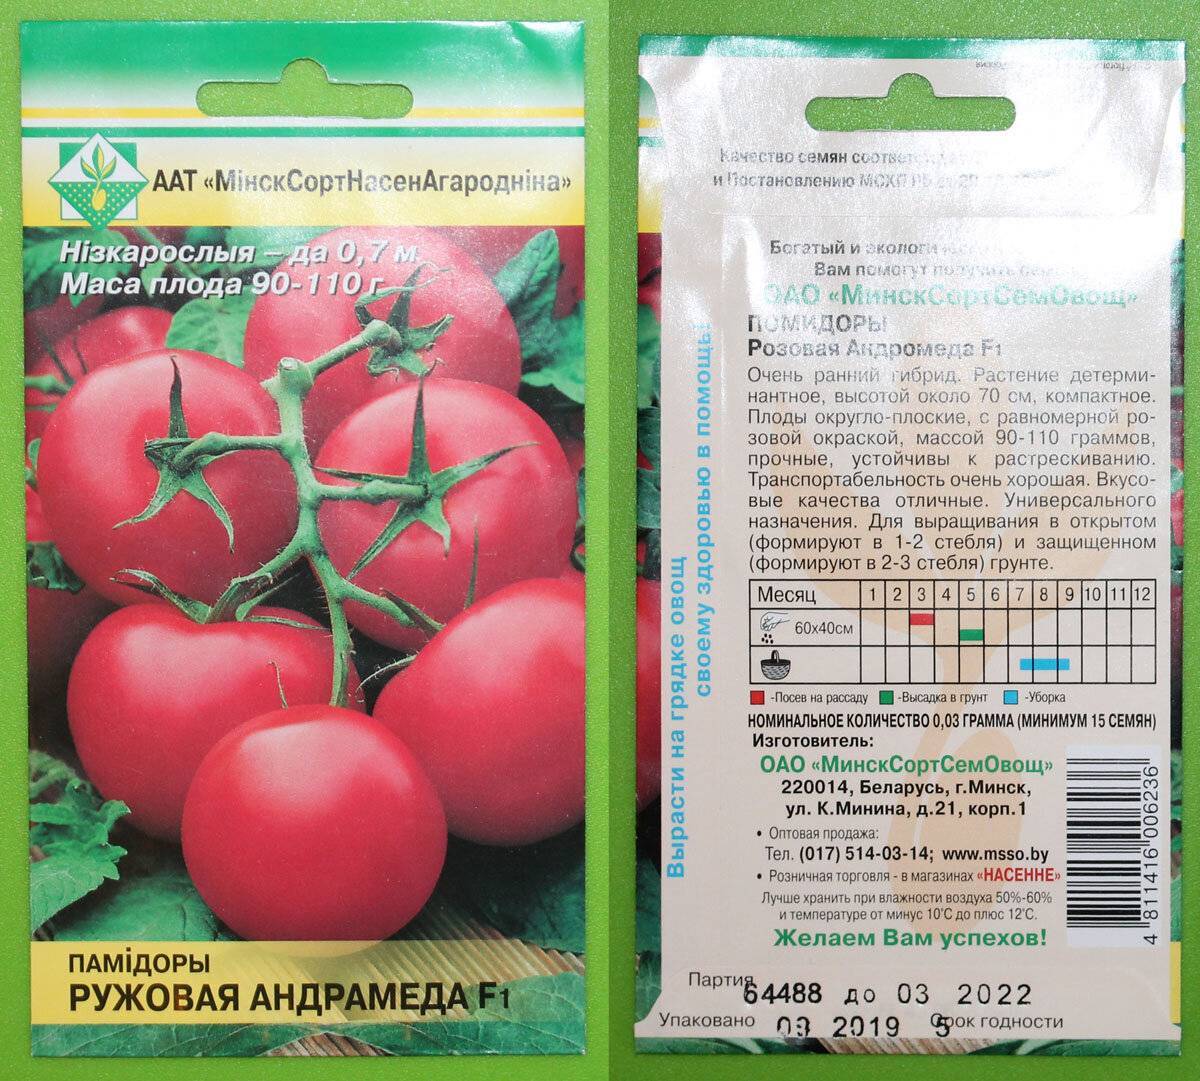 Отзывы огородников о томатах красным красно f1